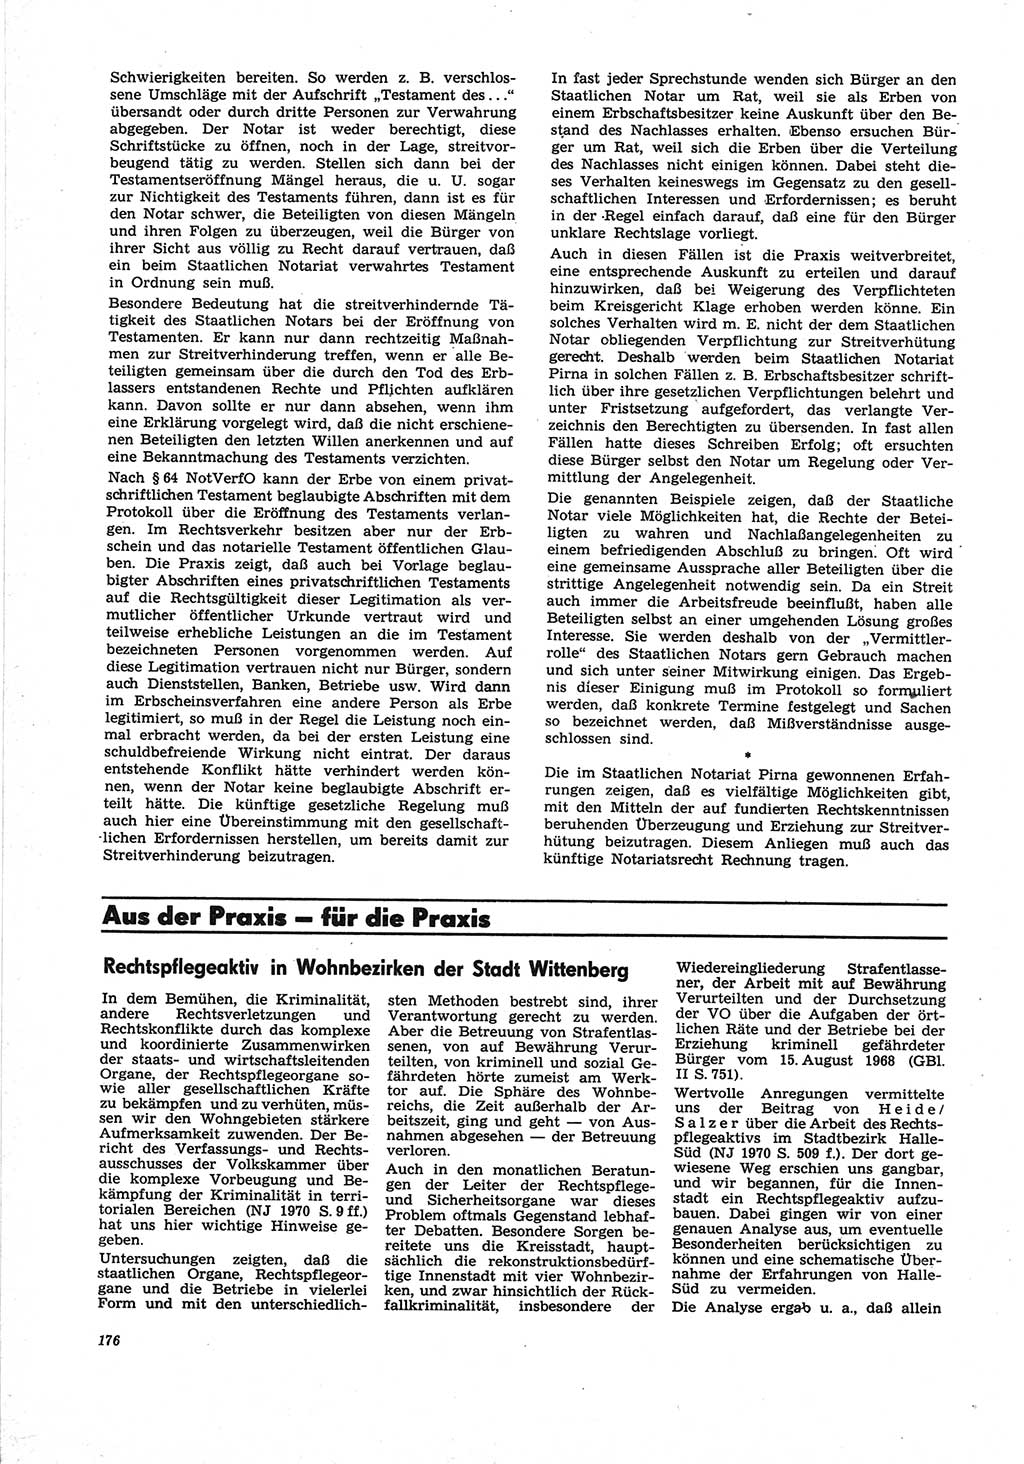 Neue Justiz (NJ), Zeitschrift für Recht und Rechtswissenschaft [Deutsche Demokratische Republik (DDR)], 25. Jahrgang 1971, Seite 176 (NJ DDR 1971, S. 176)